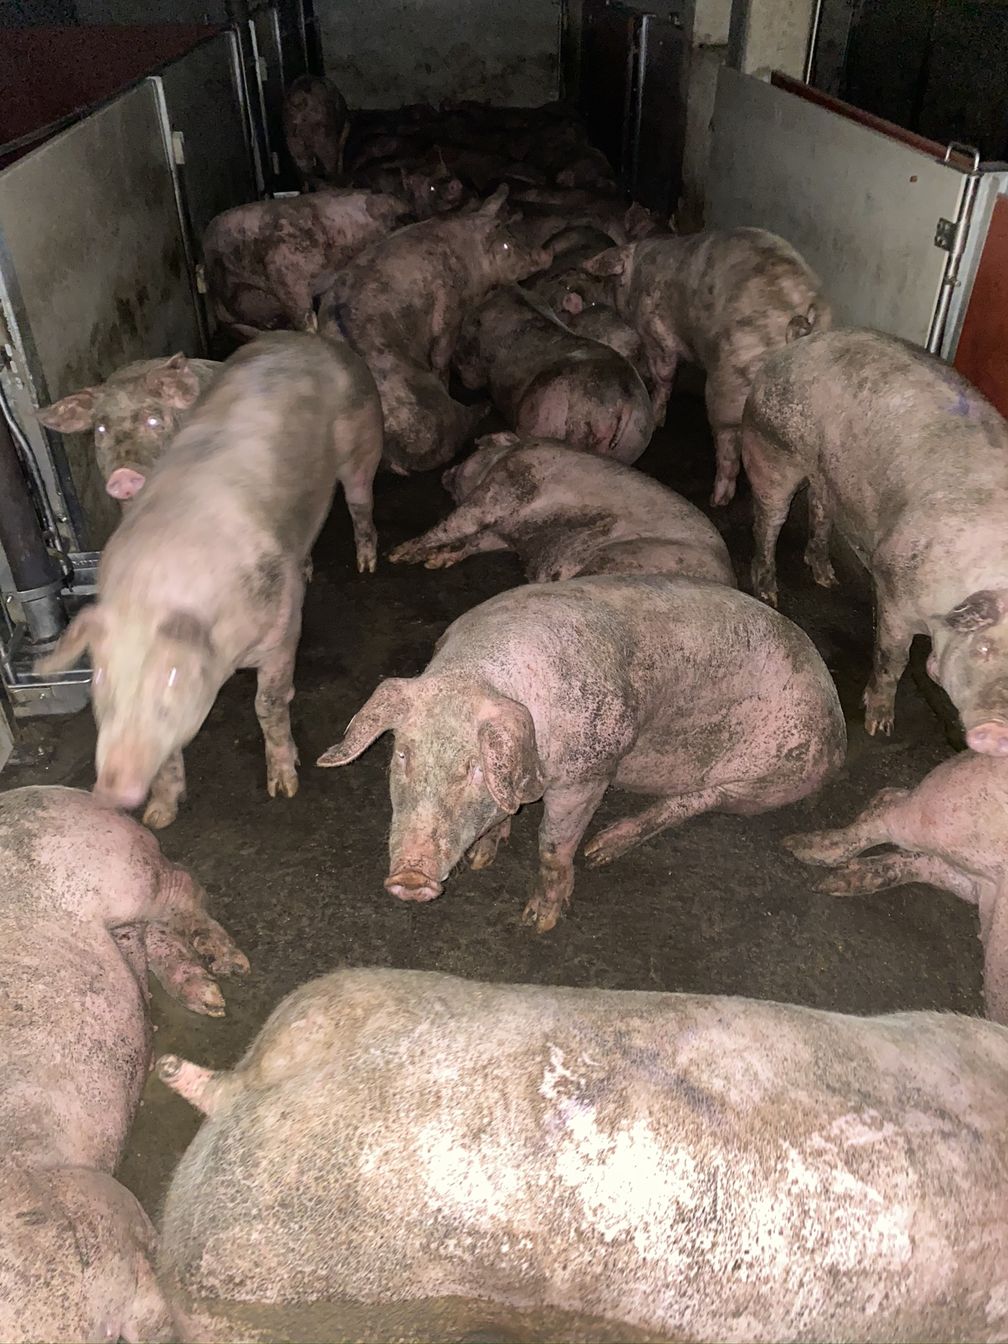 Schweine im Wartebereich des Schlachthofes Gärtringen Ende Juni 2020. Die Tiere liegen in ihren Fäkalien.  Bild: "obs/SOKO Tierschutz e.V."